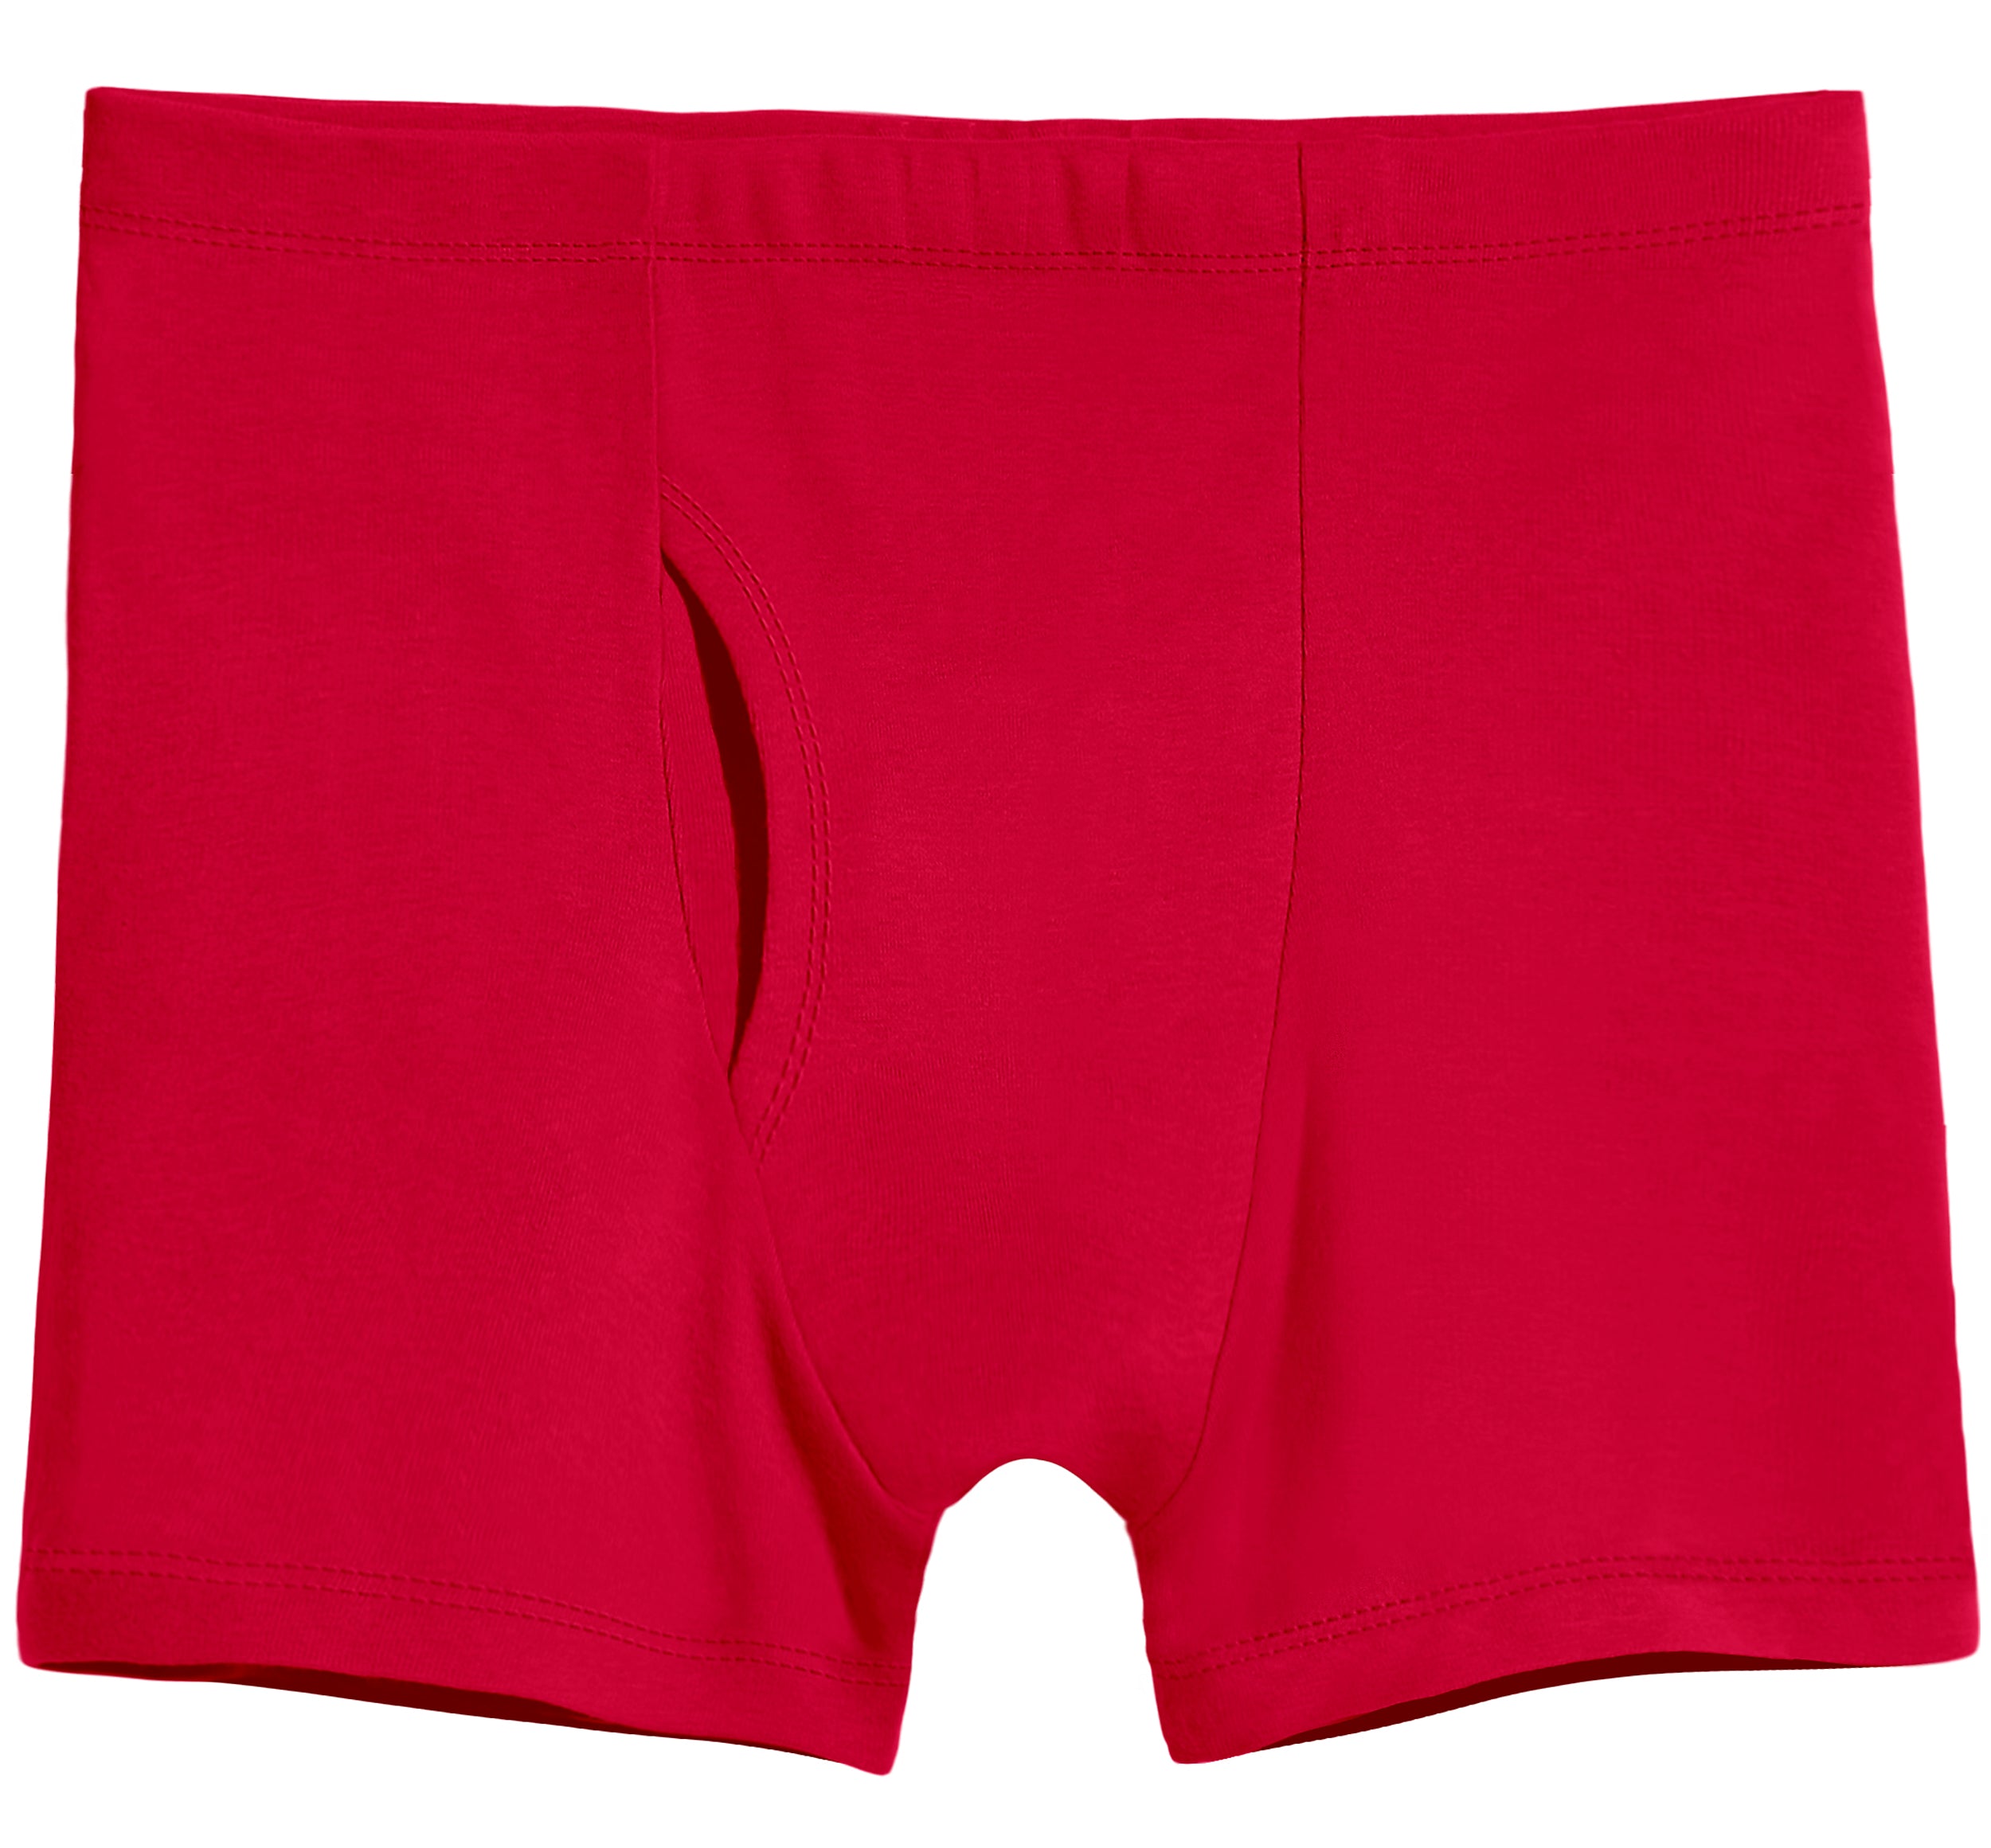 Cheap 4 Pcs Red Color Men Underwear Cotton Boxers Shorts